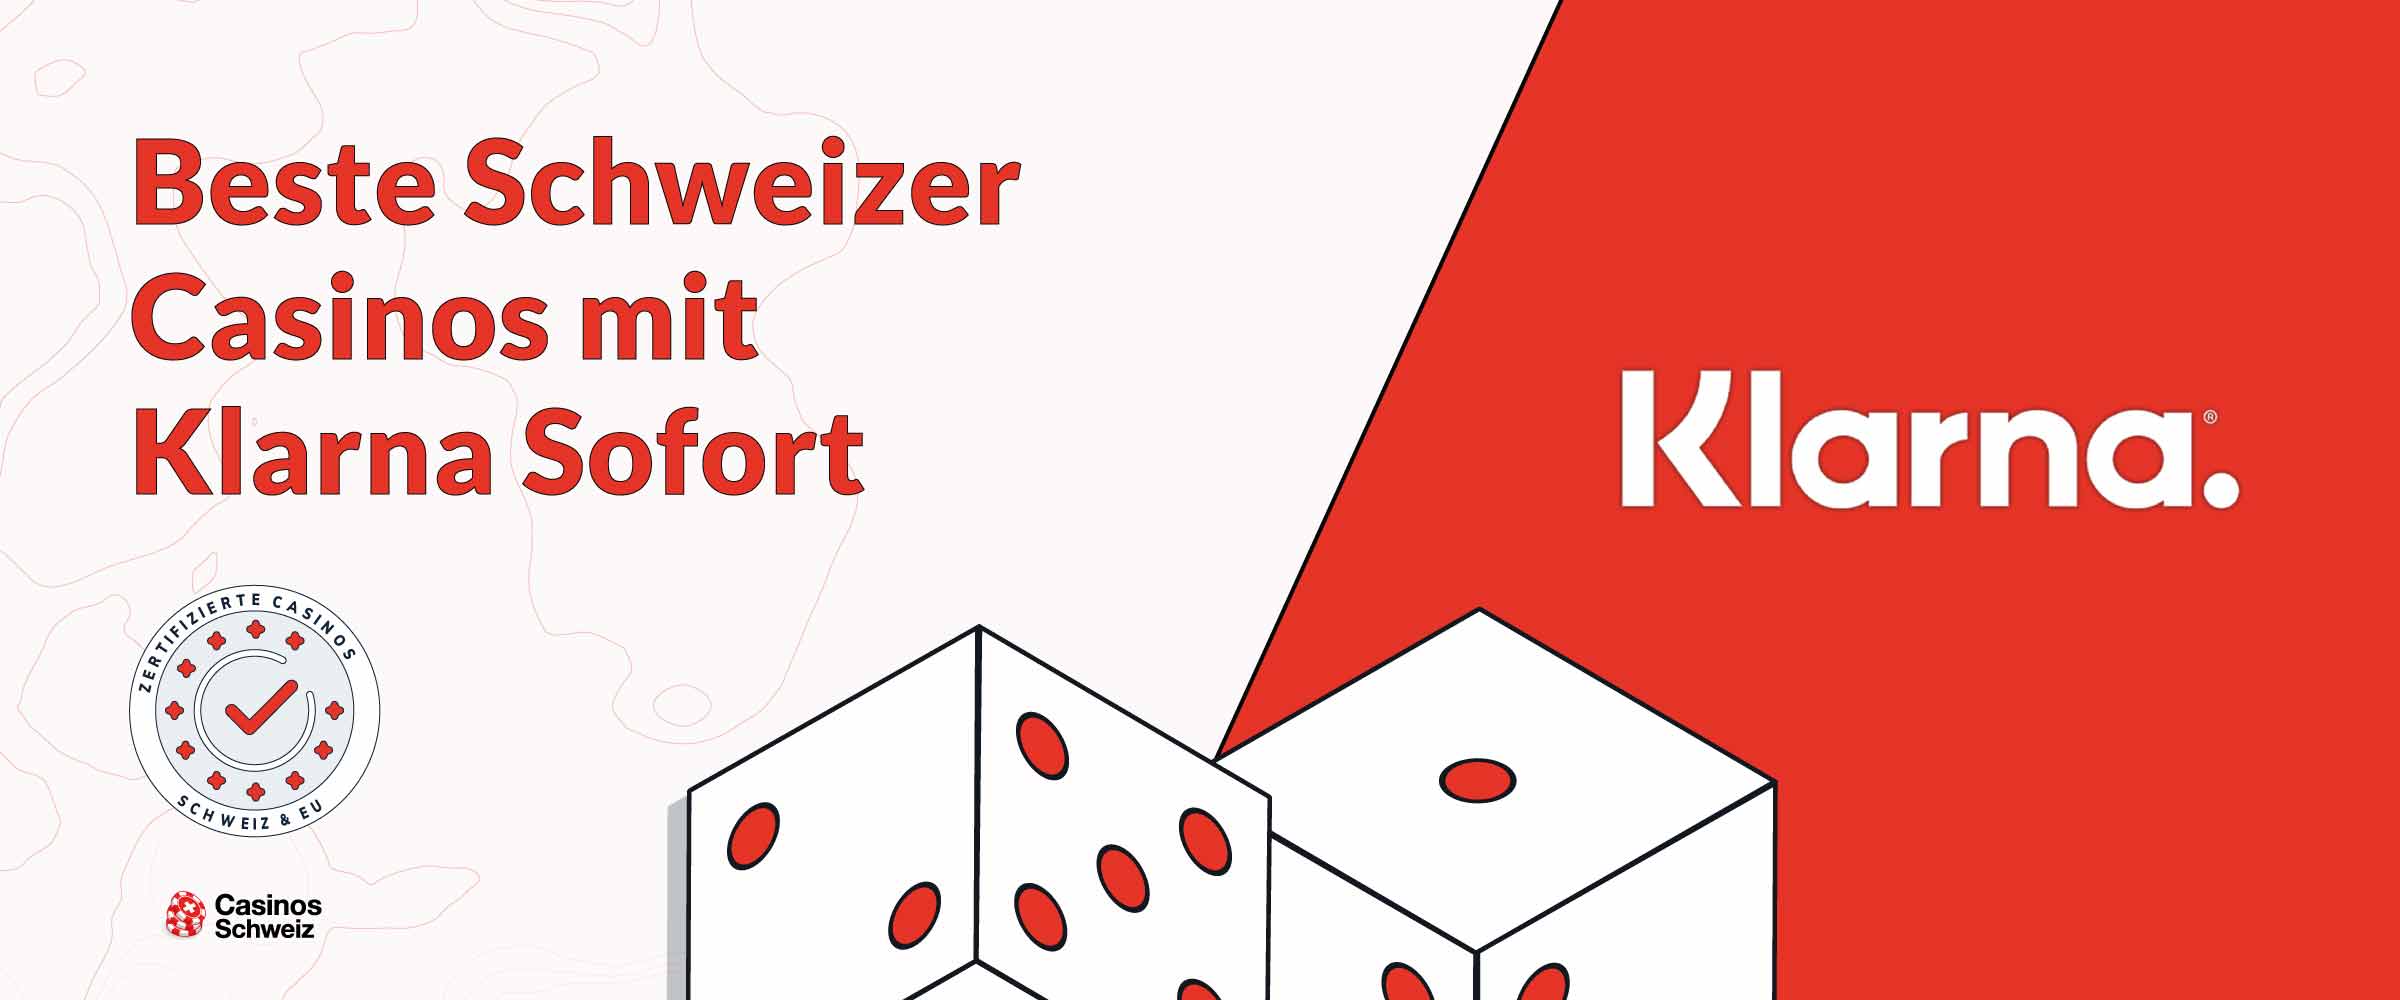 Beste Schweizer Casinos mit Klarna Sofort